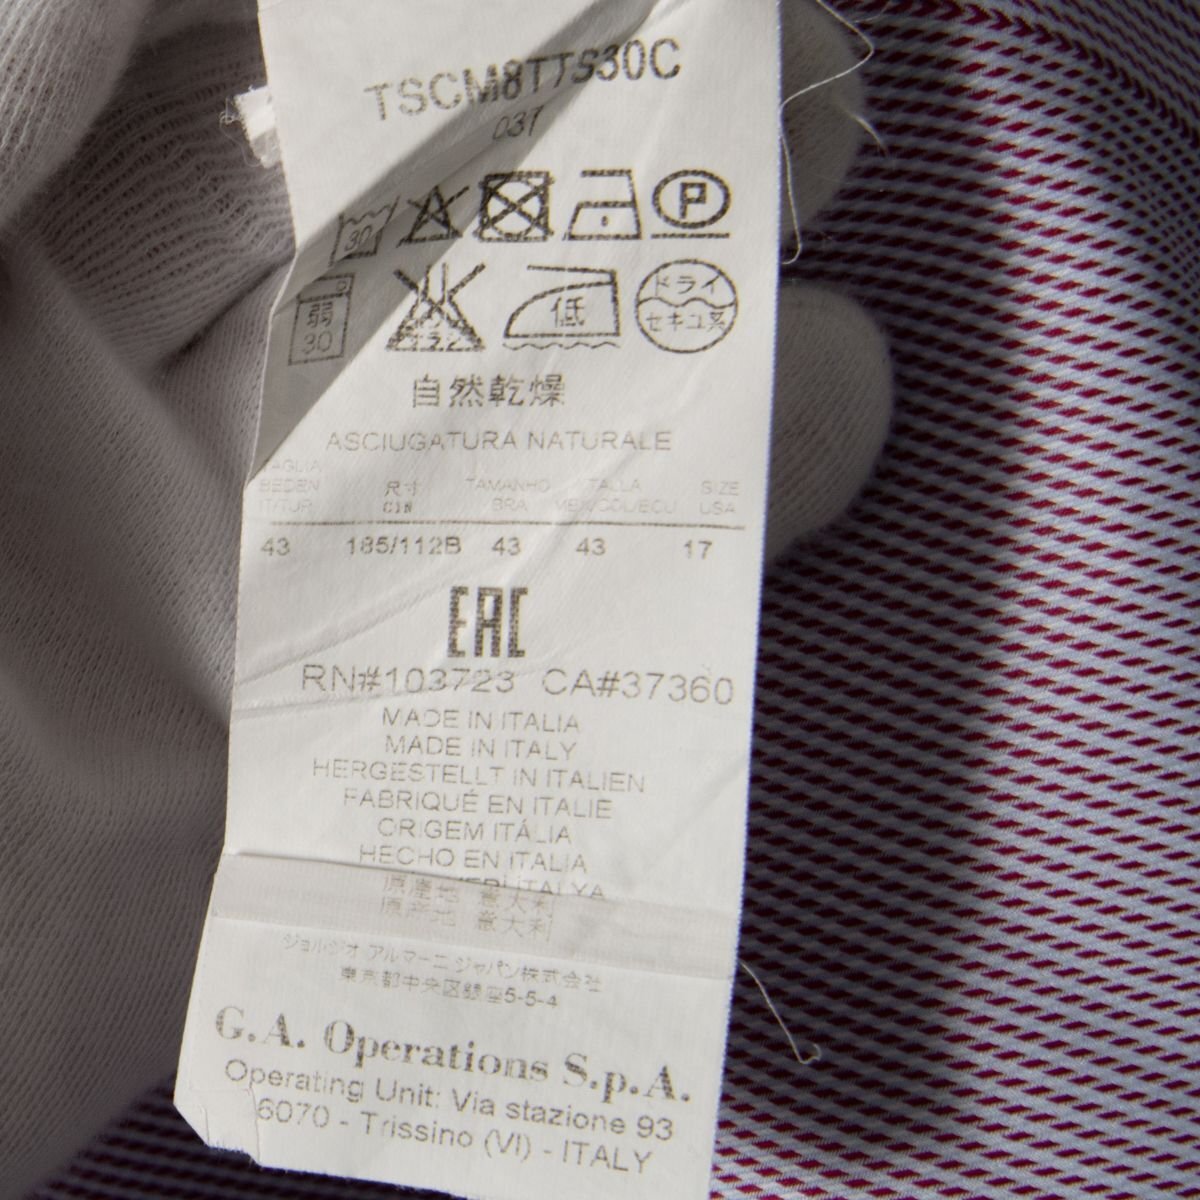 [1 иен старт ]GIORGIO ARMANIjoru geo Armani рубашка с длинным рукавом tops хлопок 100% высокий бренд Basic общий рисунок красный 43 Италия производства 